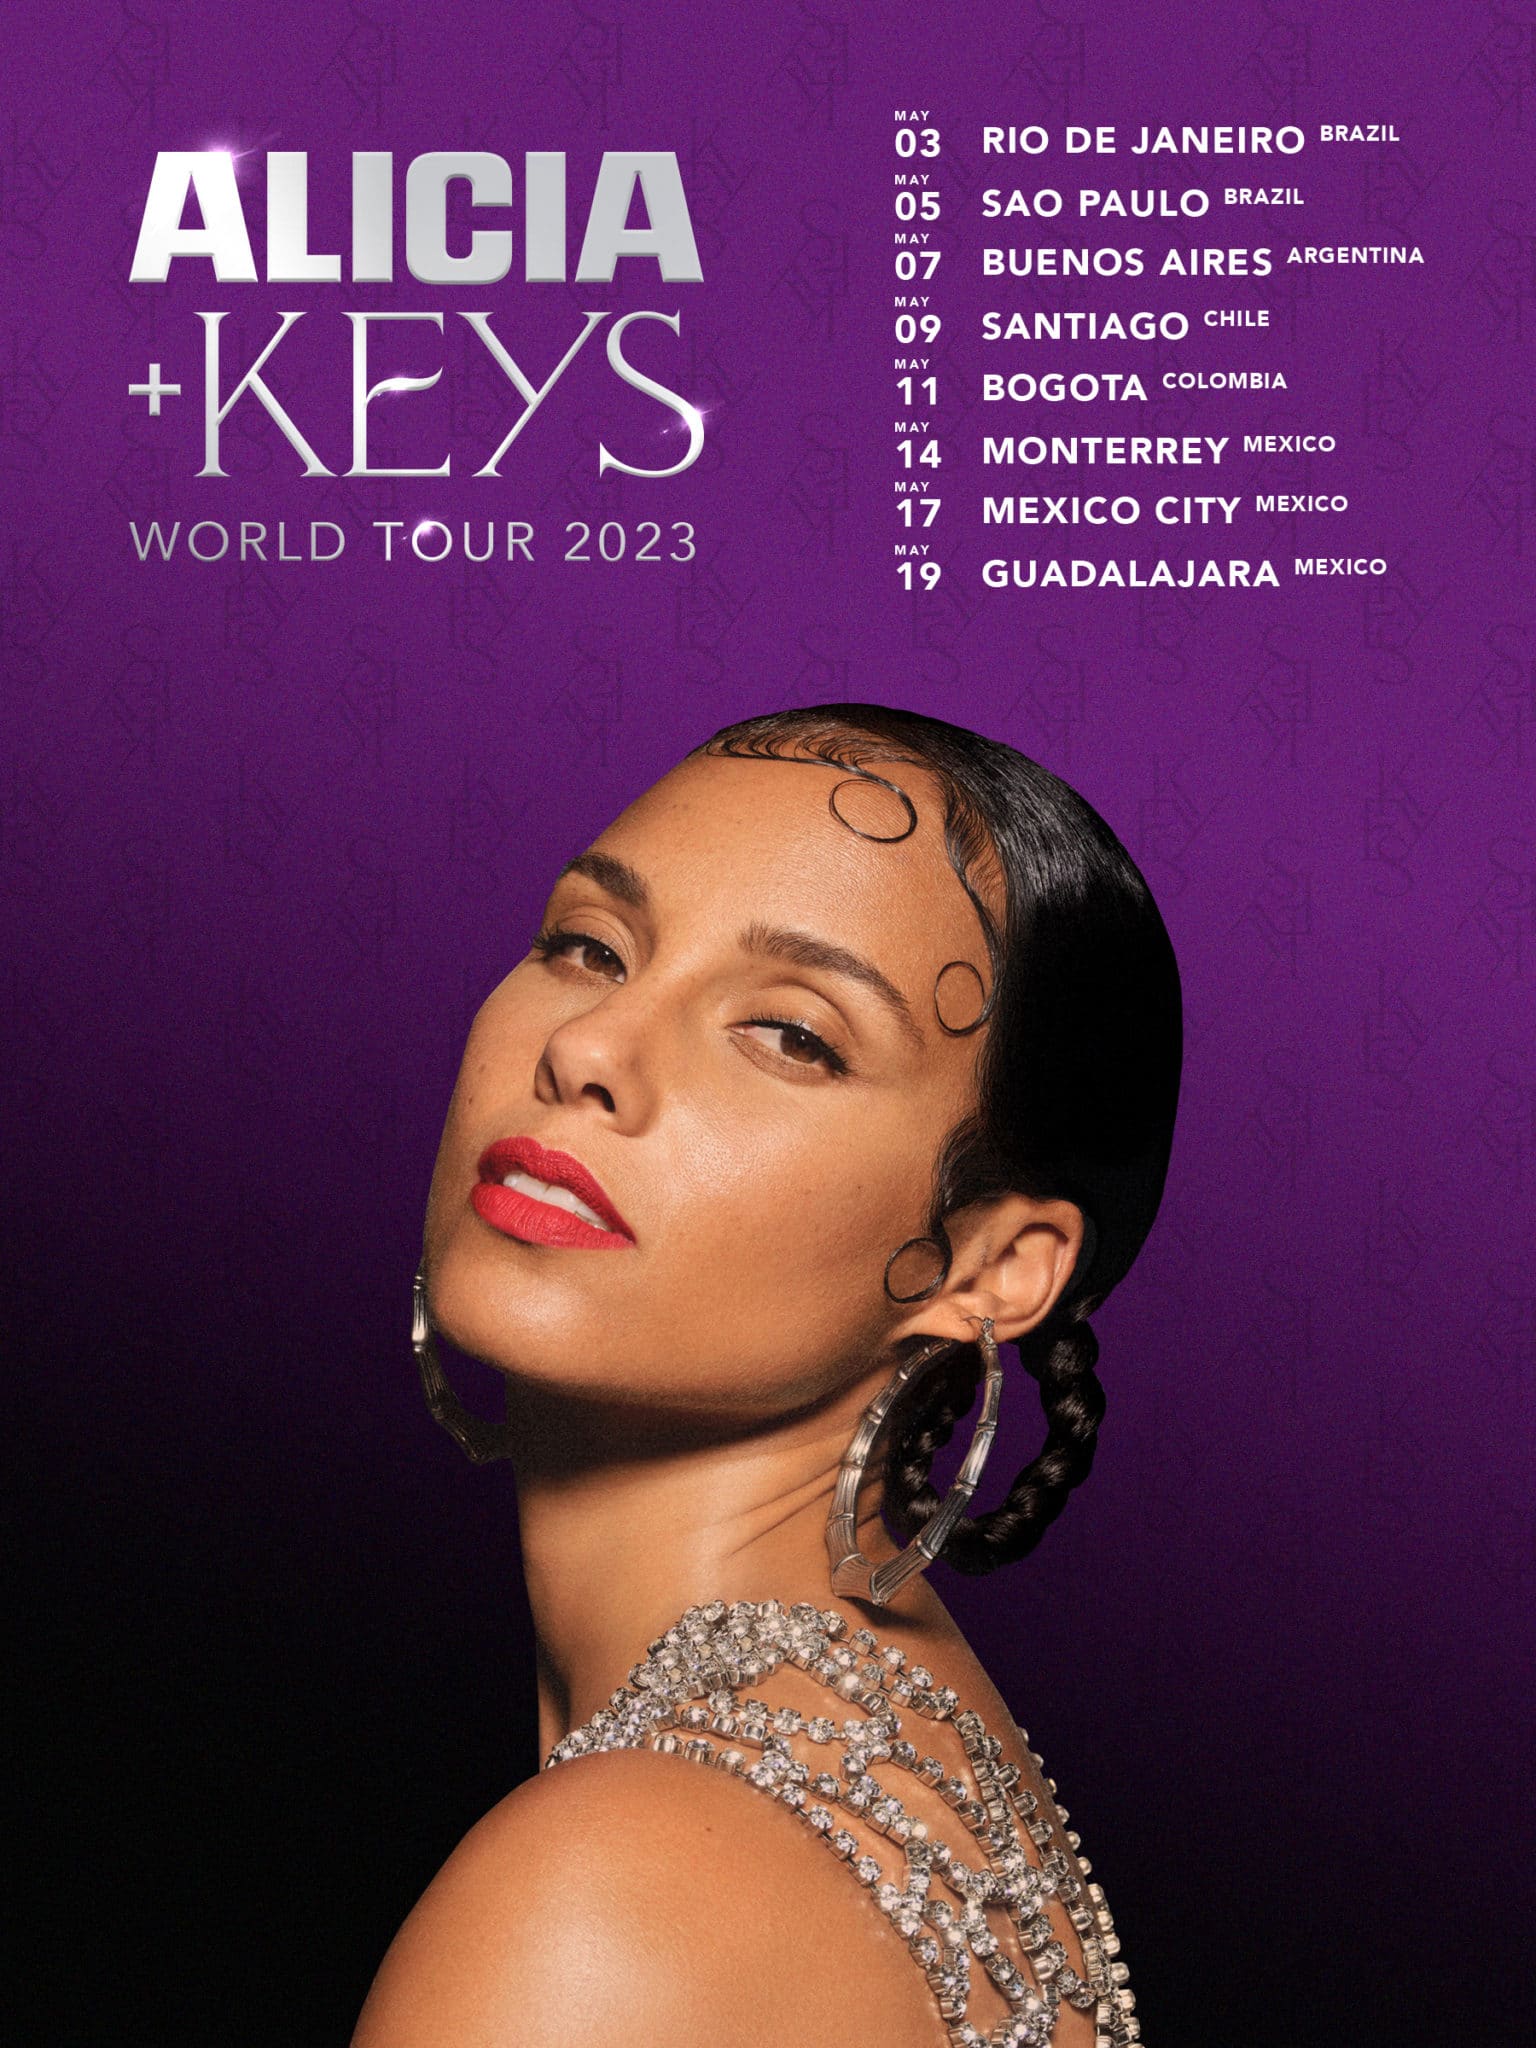 Alicia + Keys World Tour